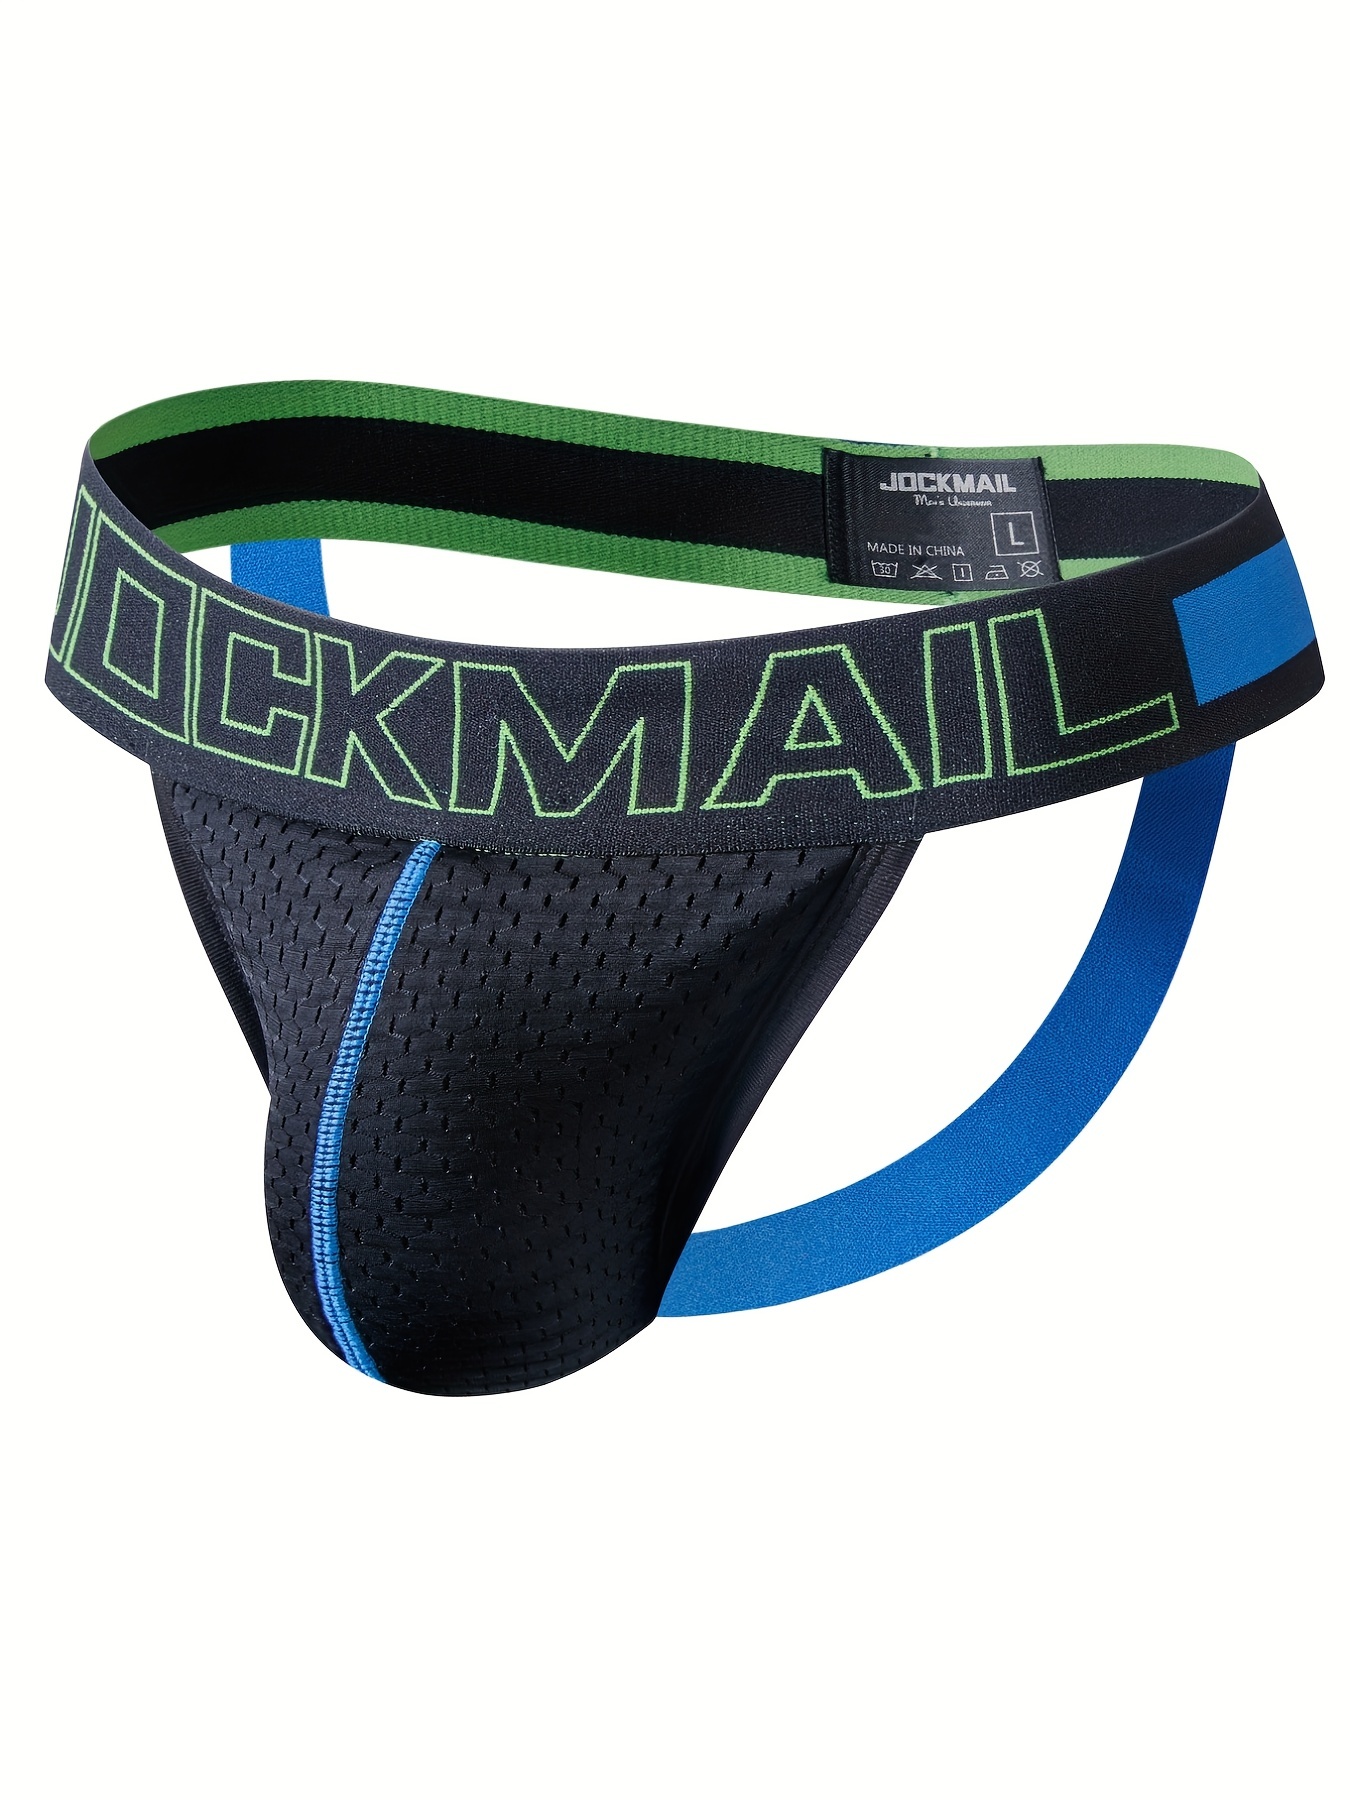 JOCKMAIL Men's Jockstrap Athletic Supporter Underwear Gym Workout Strap  Brief